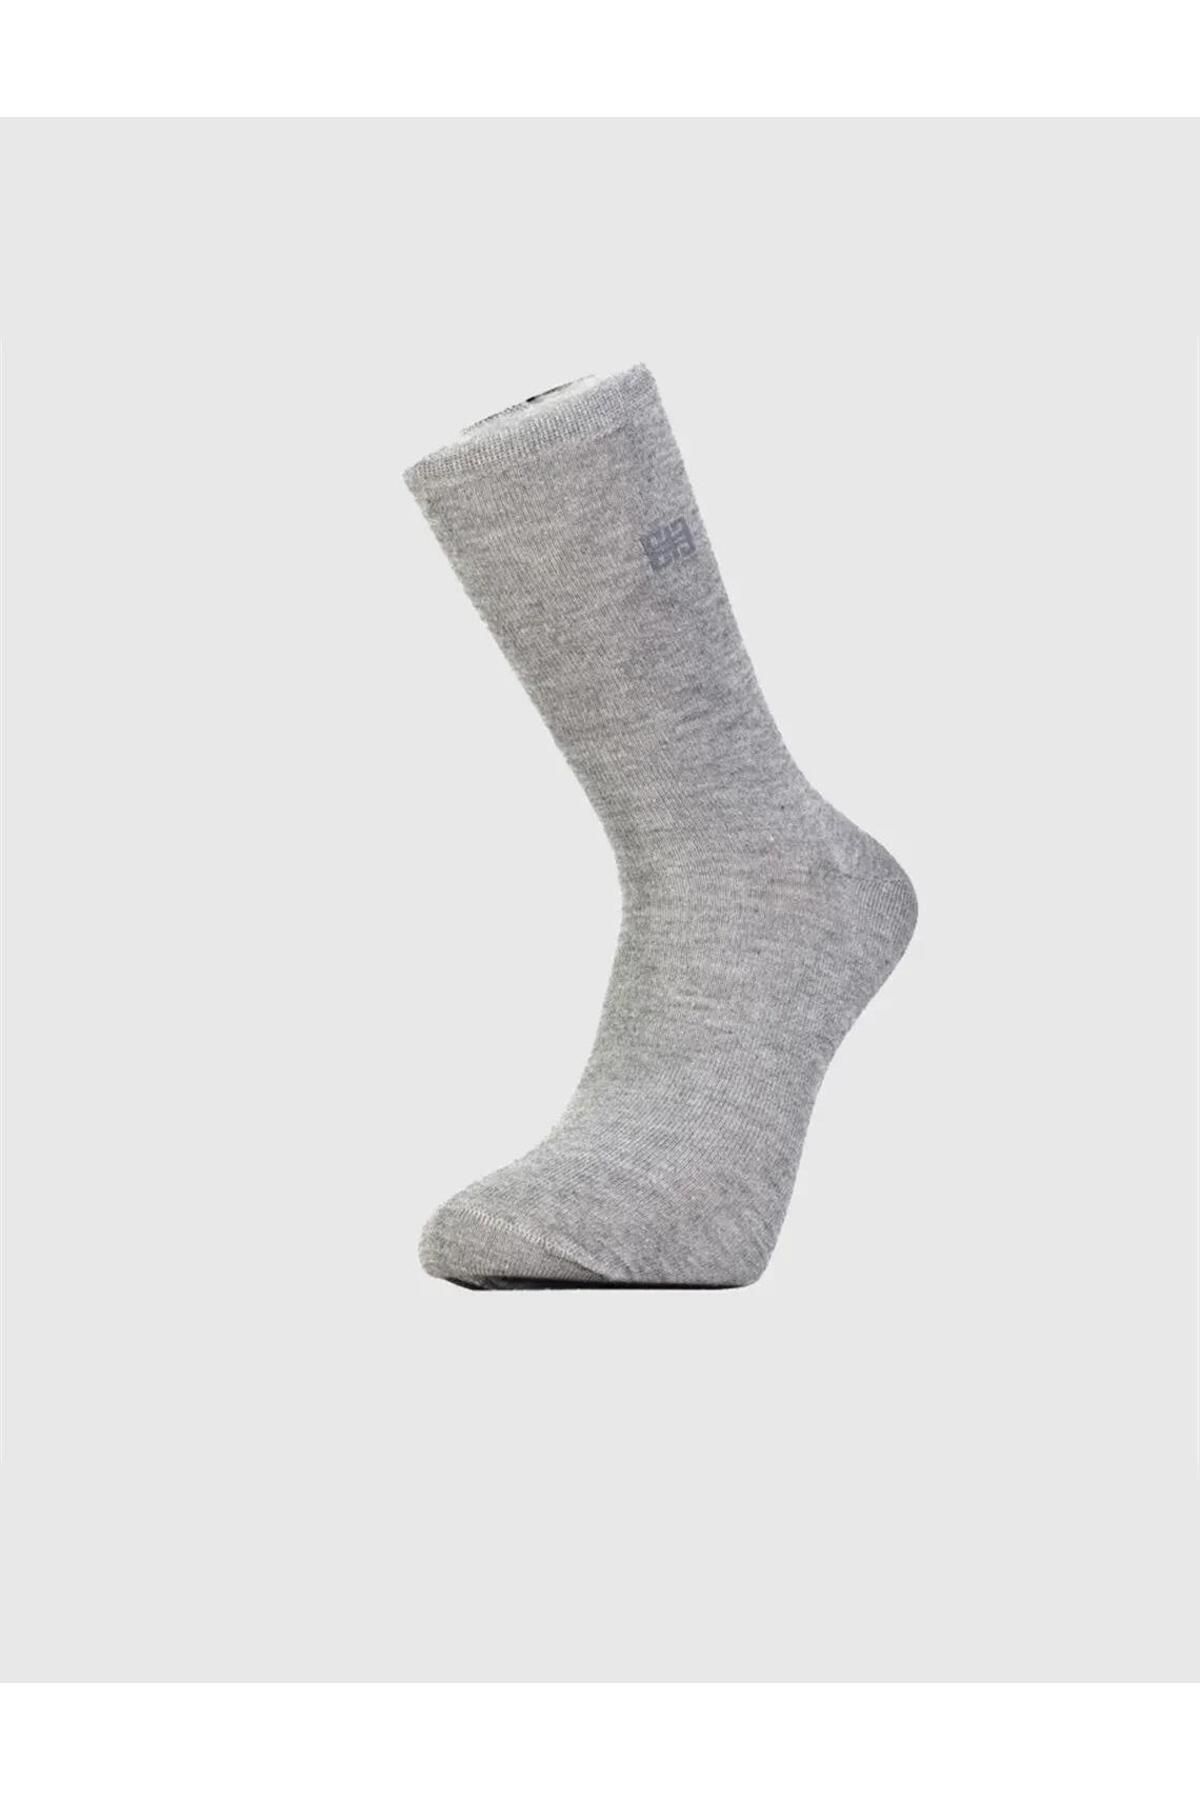 Cabani جورابهای مردانه خاکستری